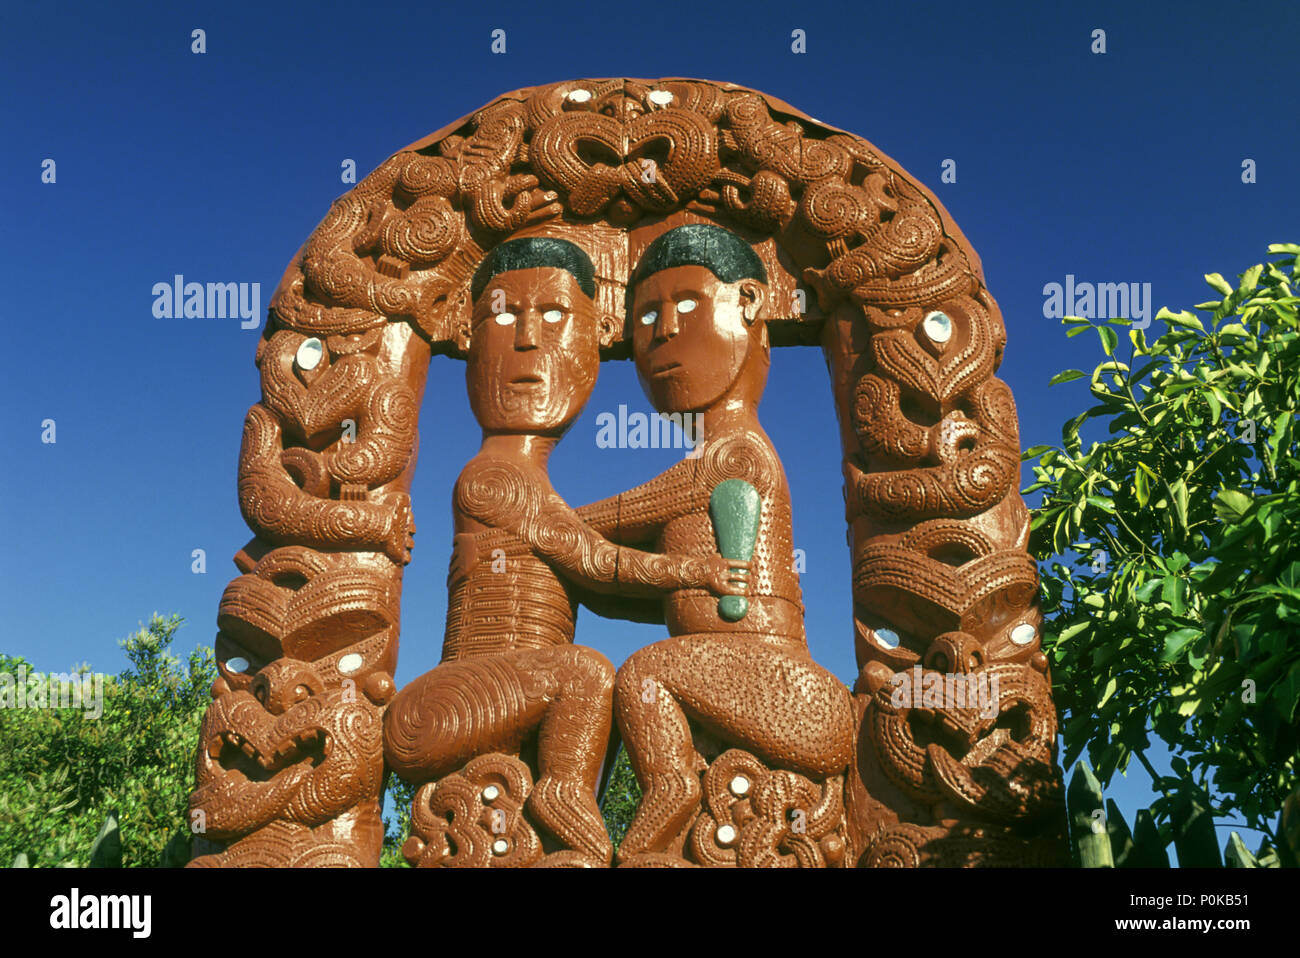 Historique 1995 ROTORUA WHAKAREWAREWA PASSERELLE maoris de Nouvelle-Zélande l'ÎLE DU NORD Banque D'Images